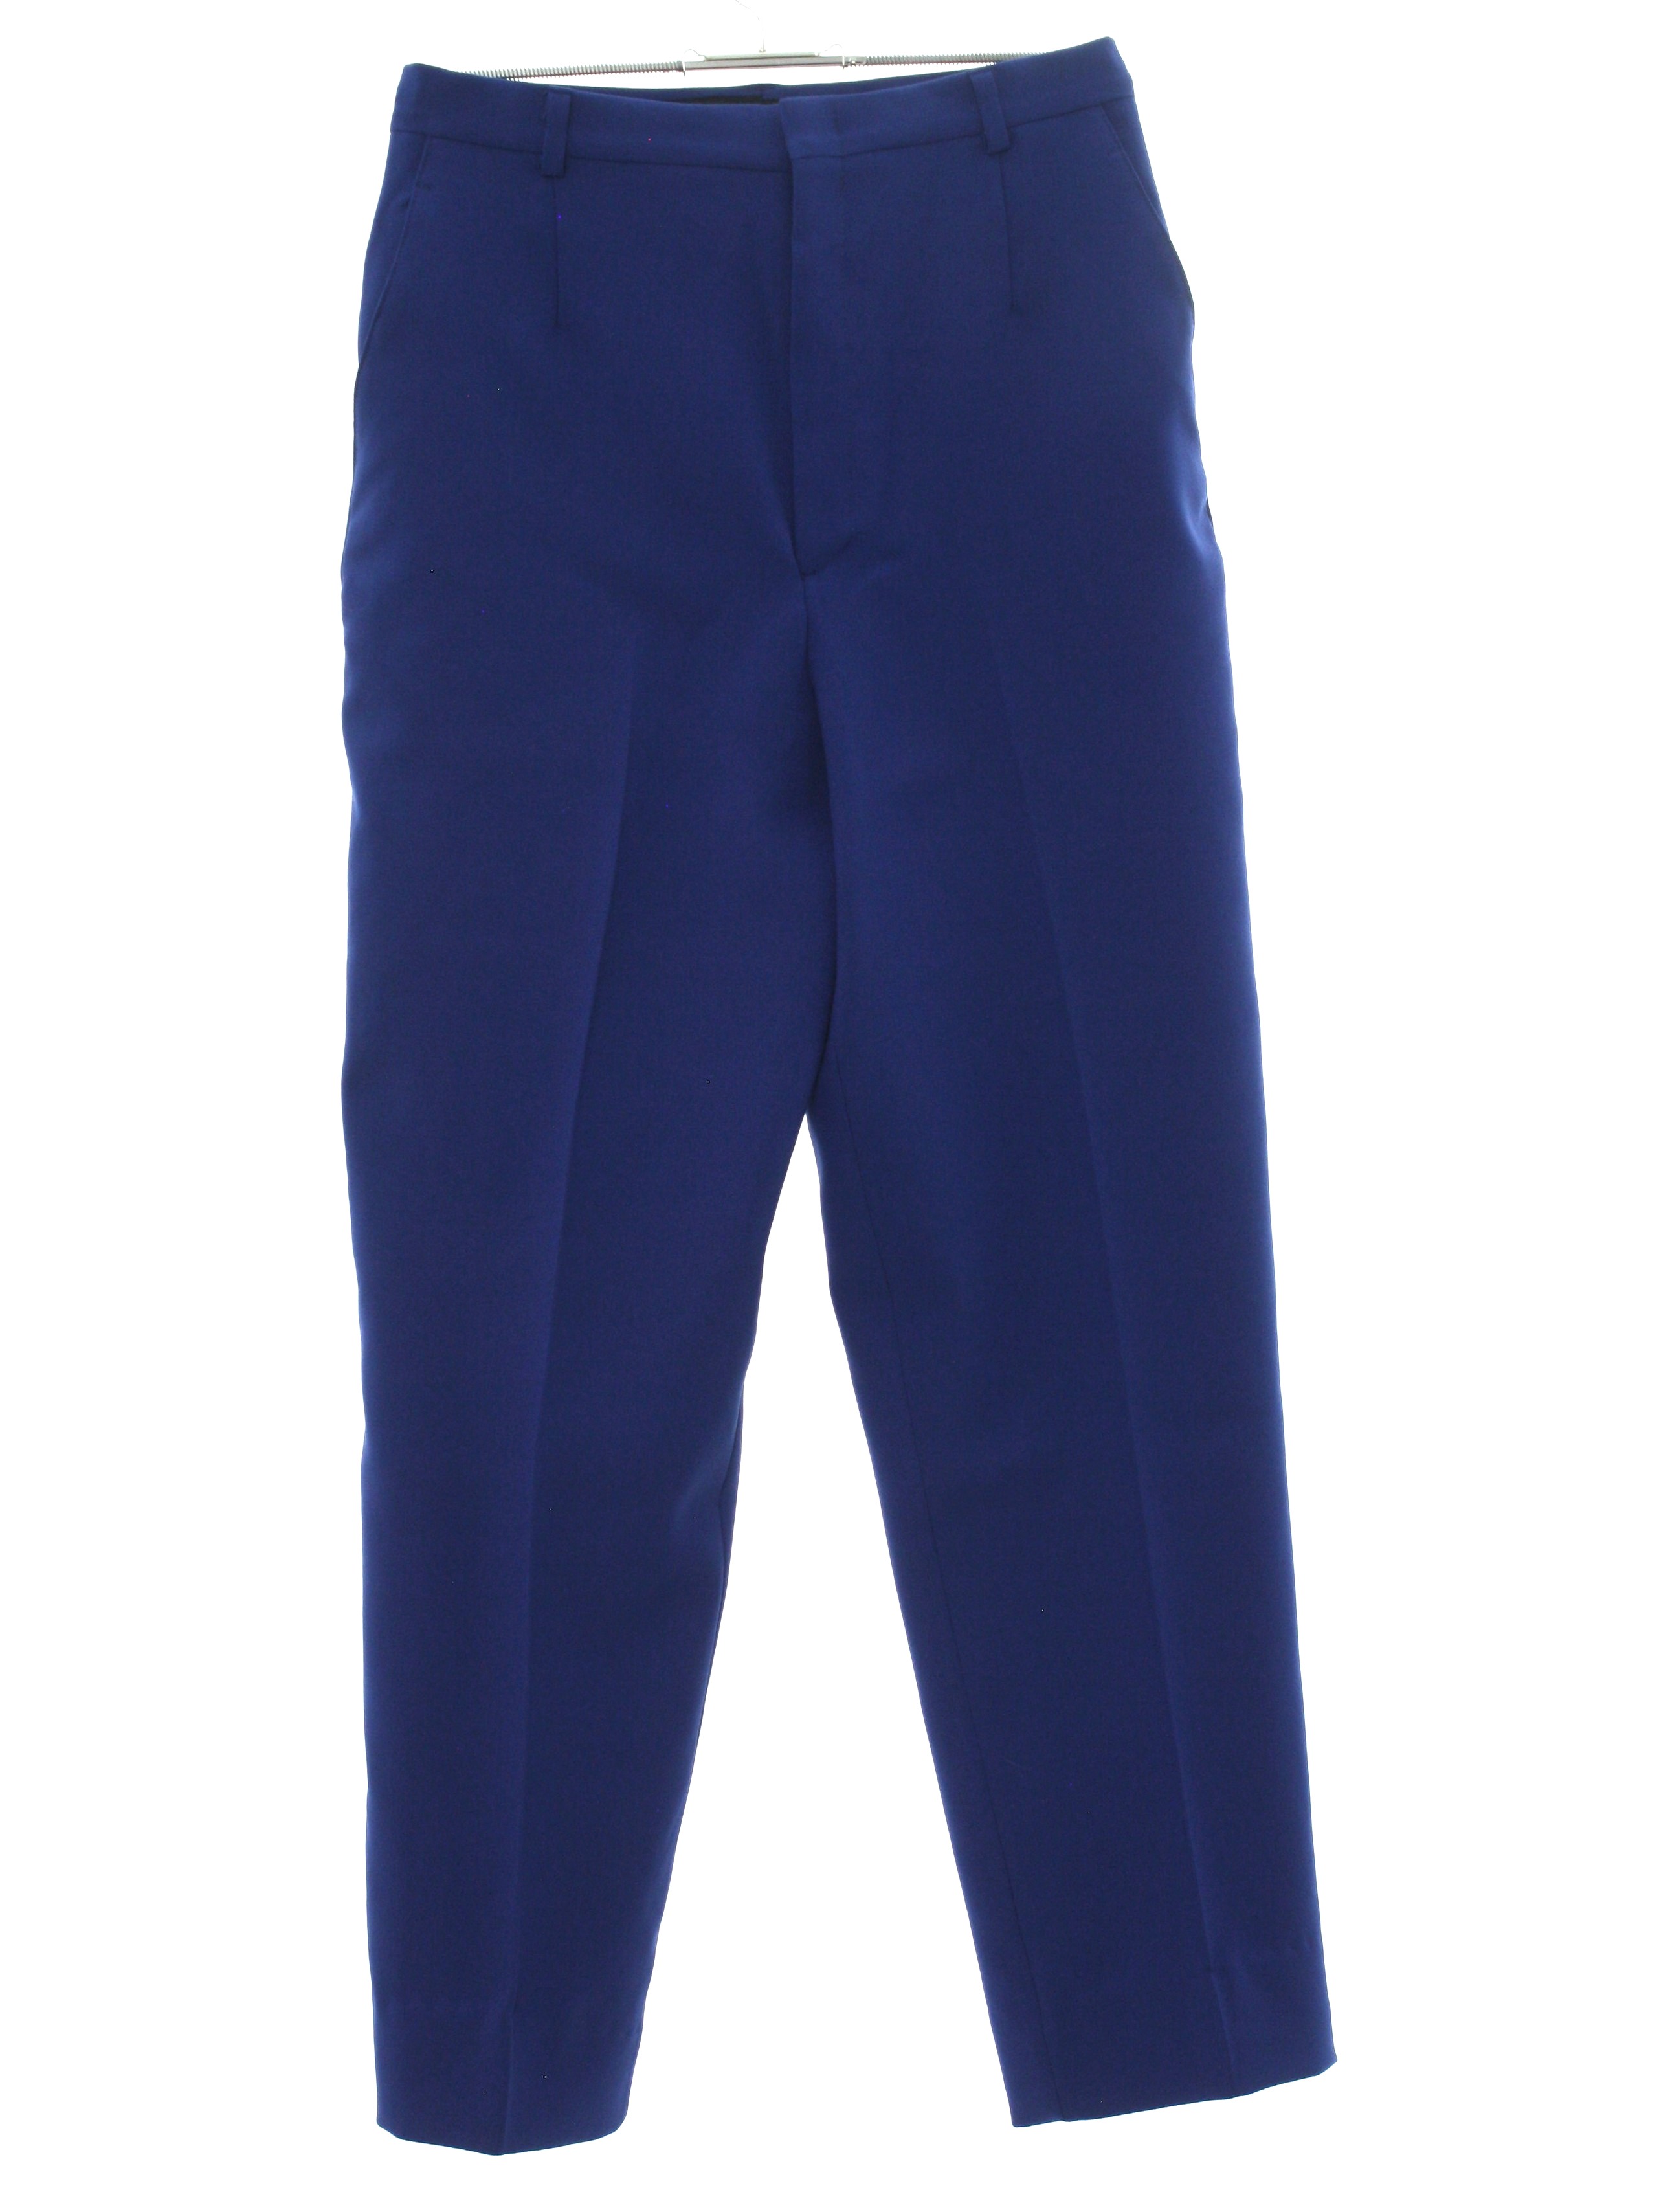 Haggar Eighties Vintage Pants: 80s -Haggar- Womens navy blue background ...